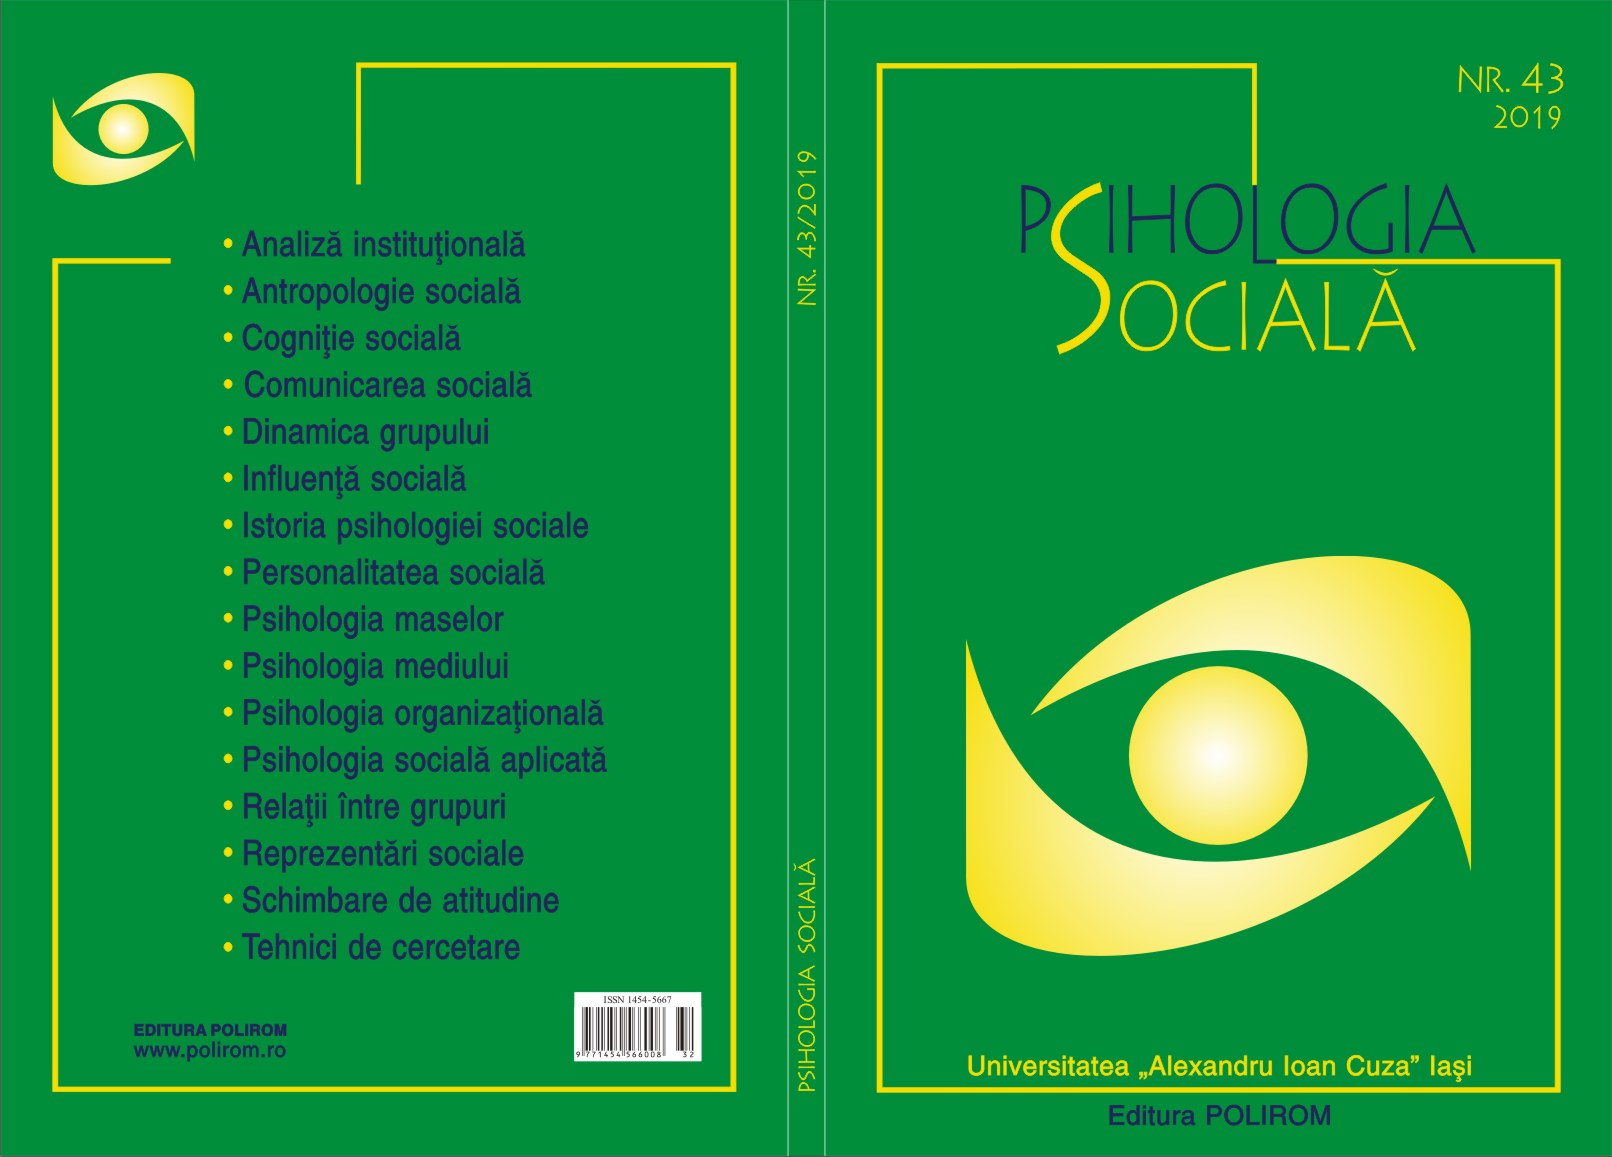 Les sciences sociales au Brésil (II)